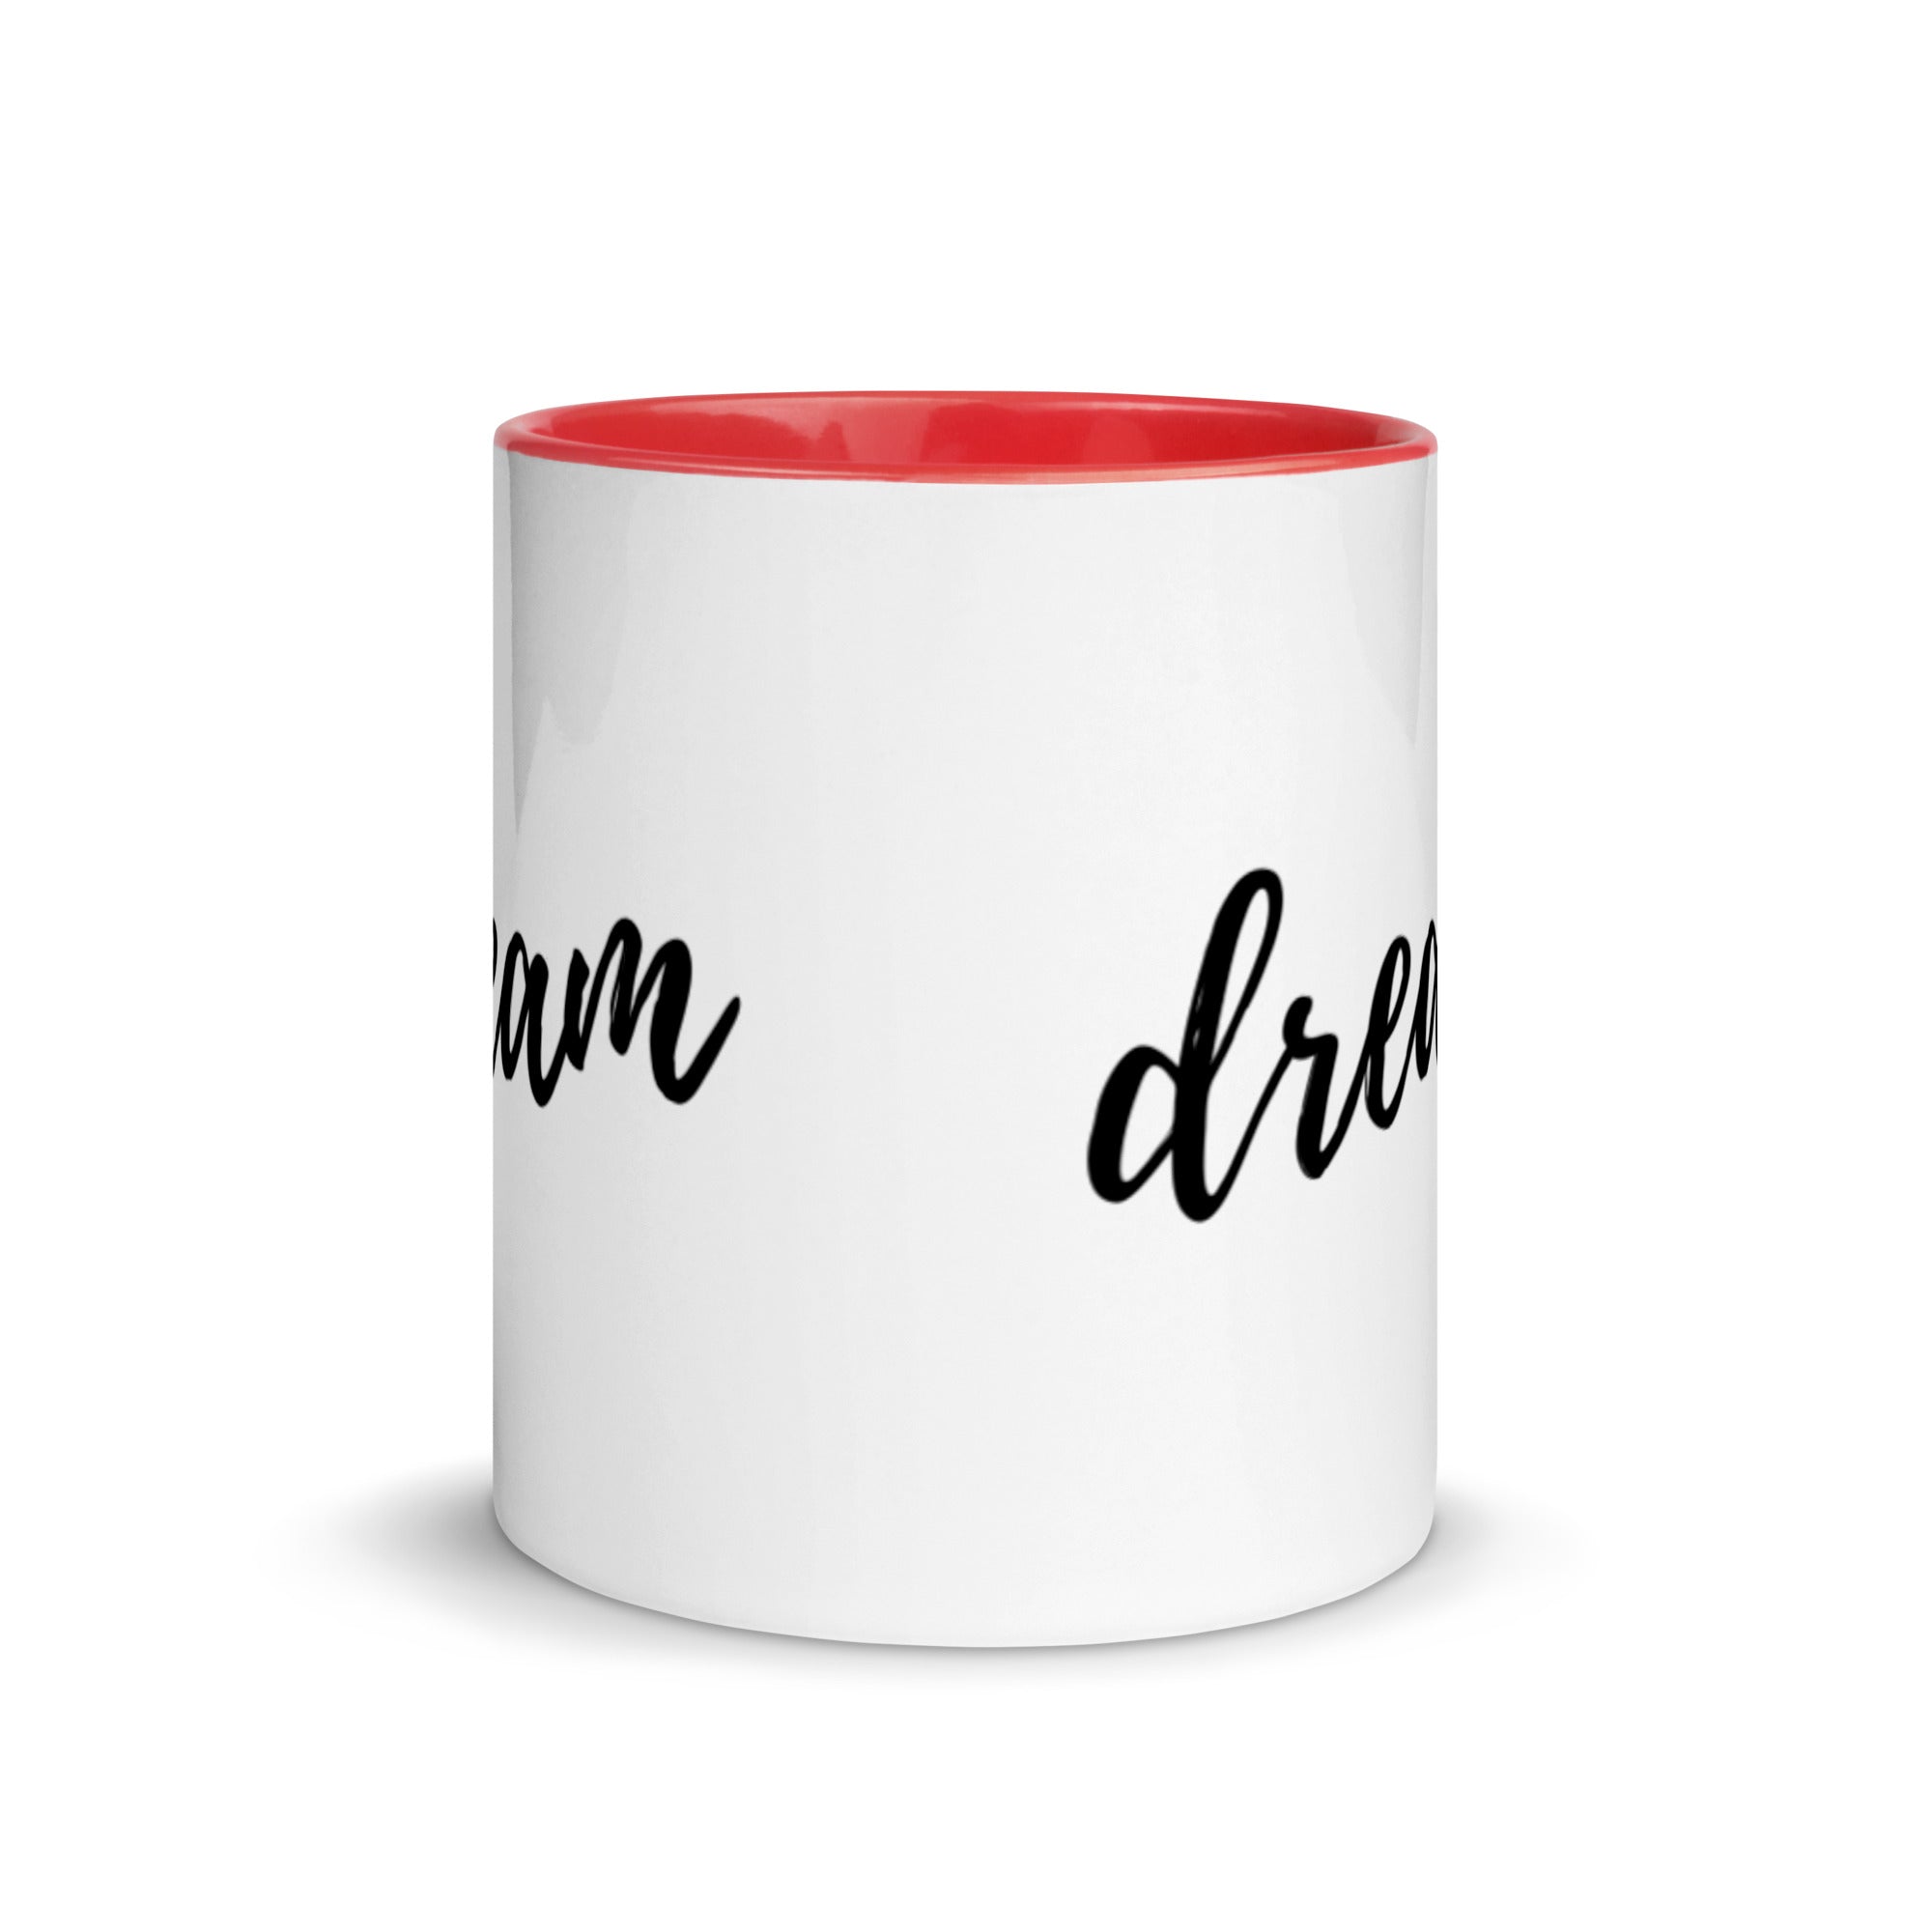 Dream - Mug with Color Inside